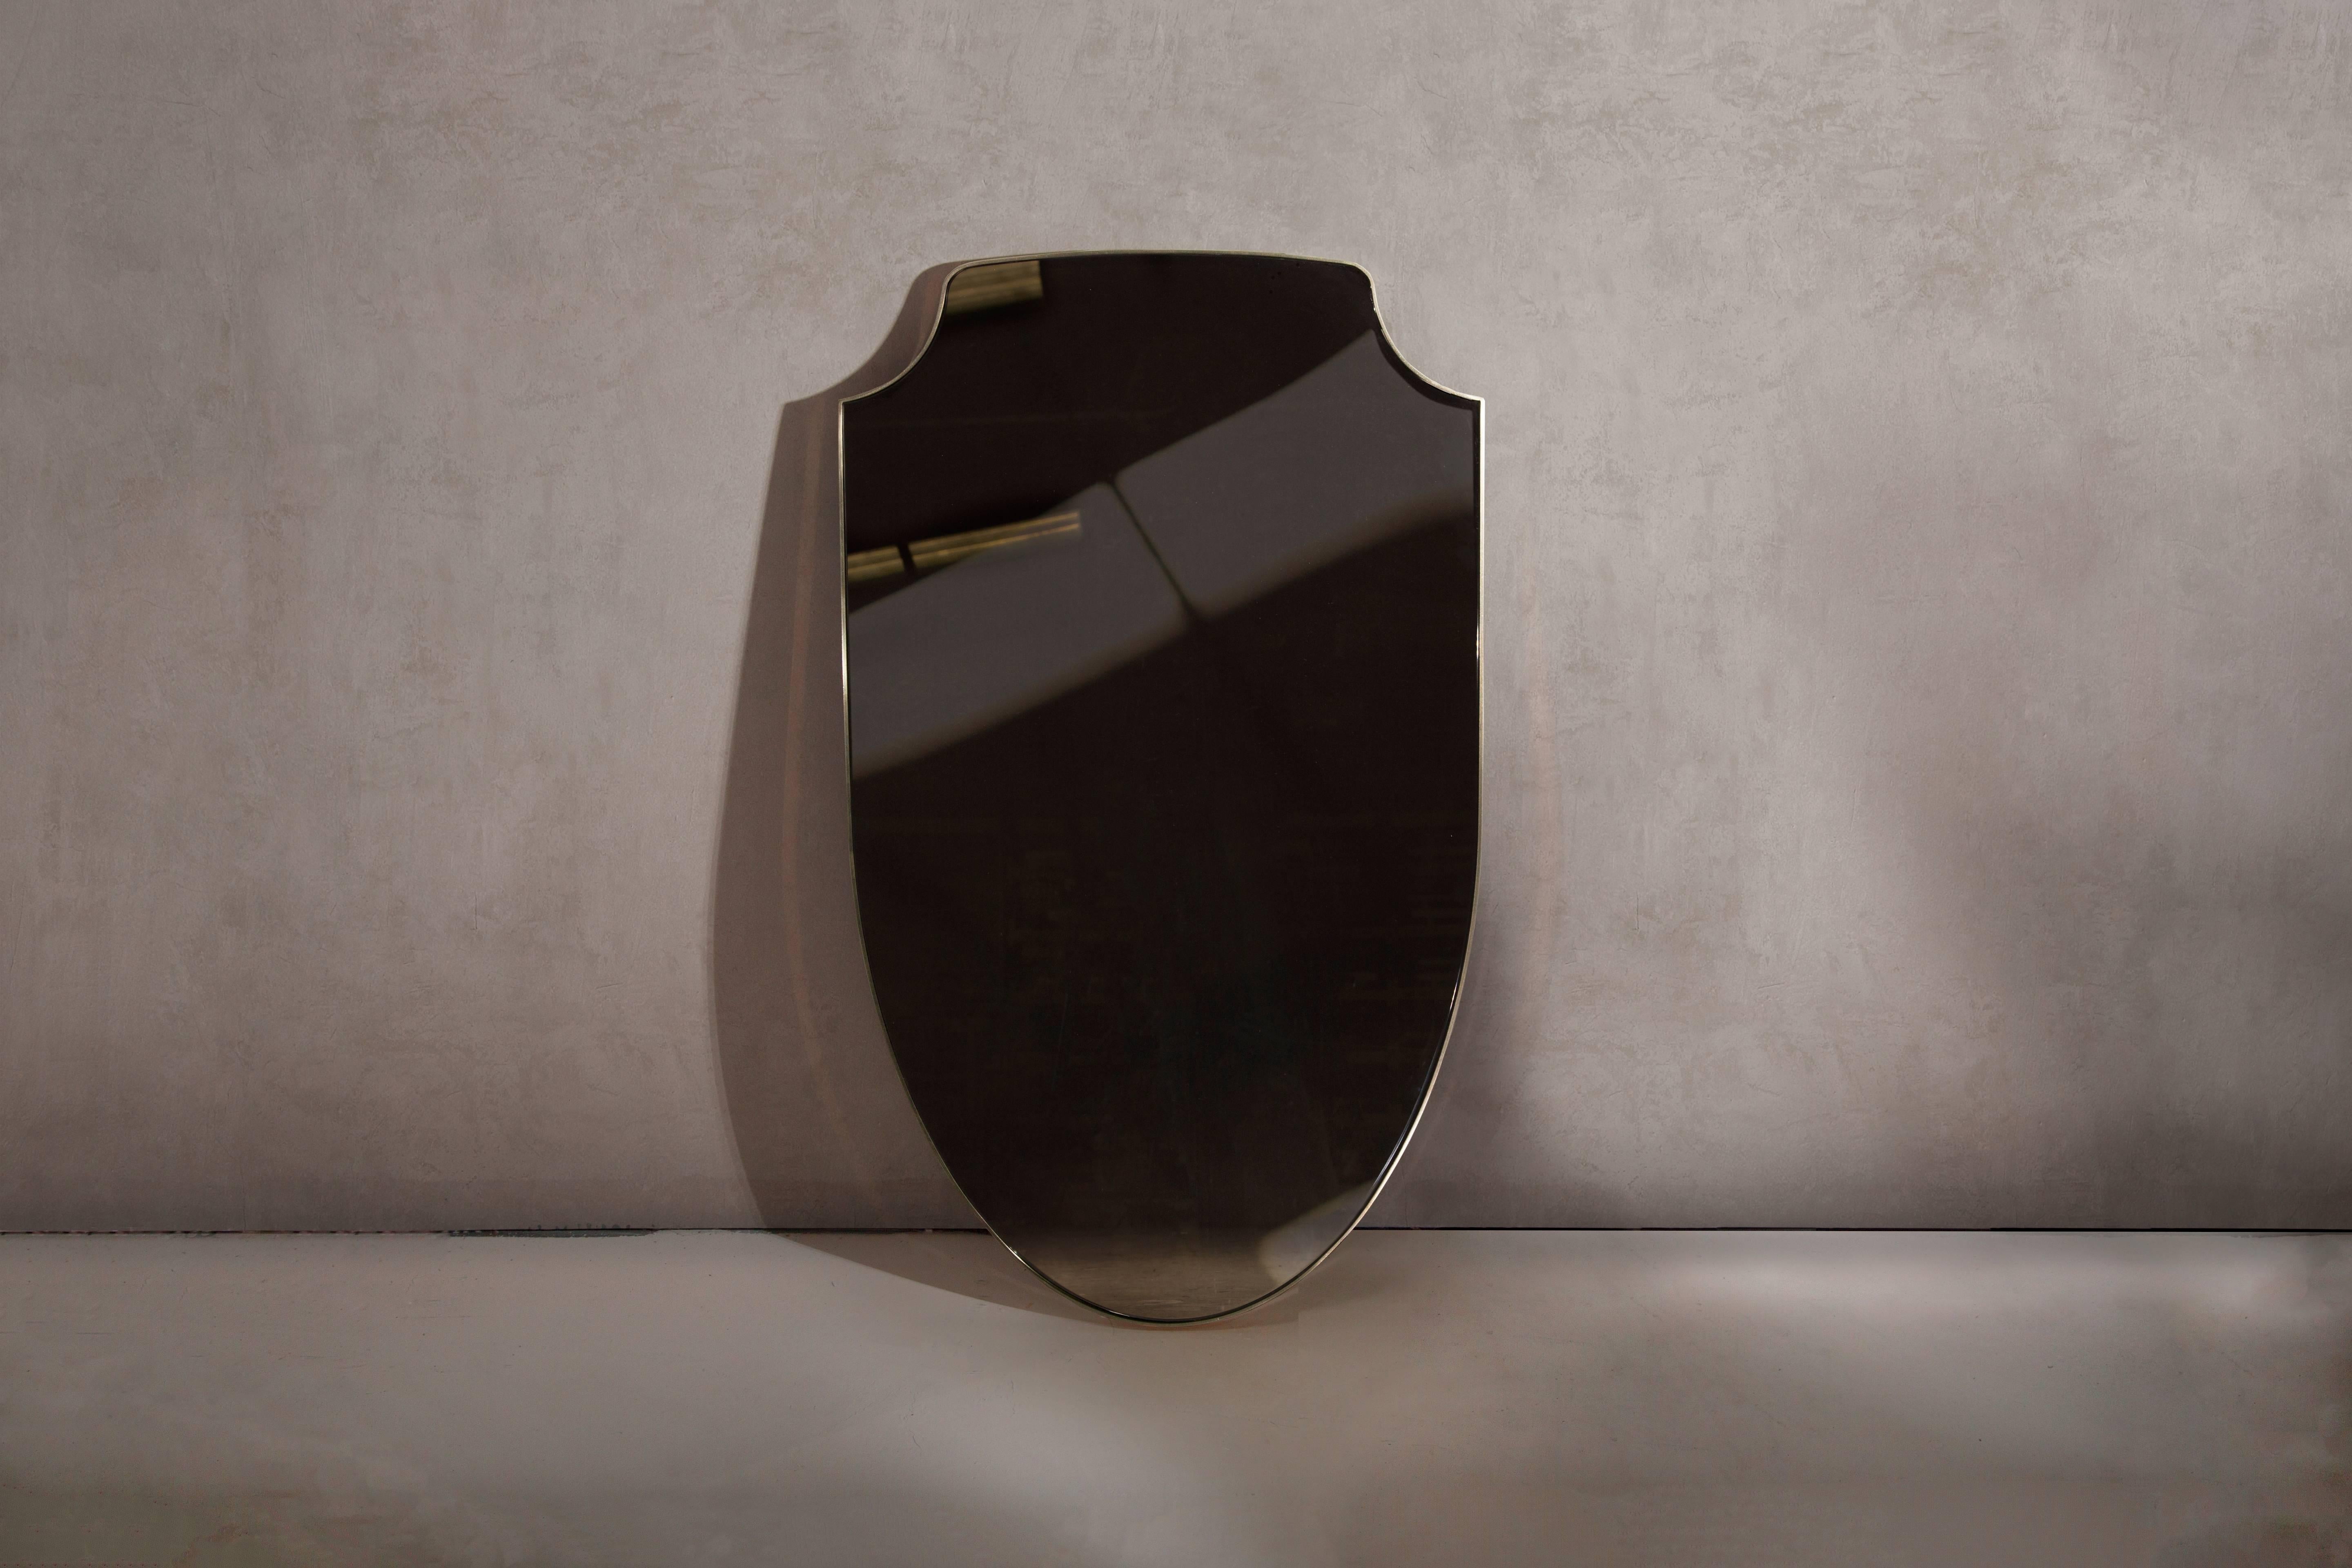 Ein Wandspiegel aus poliertem Messing und bronzefarben getöntem Glas, der im Norden auf Bestellung handgefertigt wird. Sondergrößen und -ausführungen sind erhältlich.

Lieferung mit zwei Schraubbefestigungspunkten an der Rückseite. Größere Spiegel